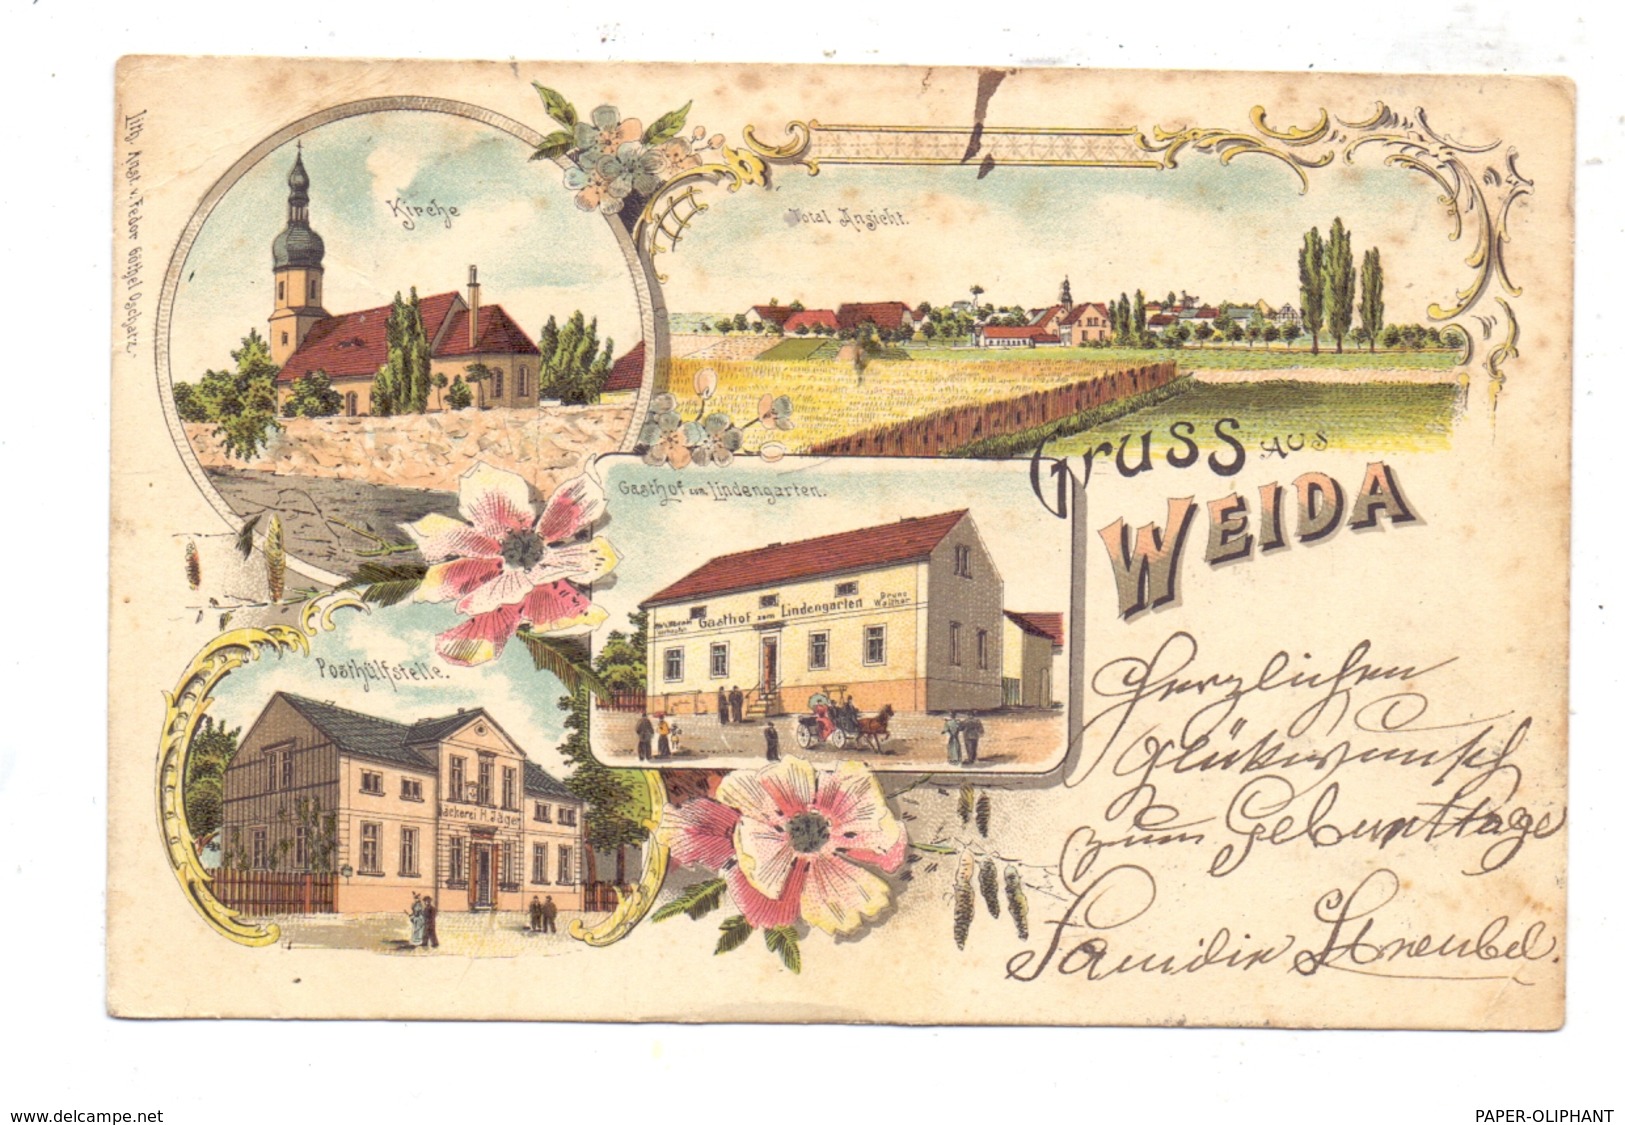 0-6518 WEIDA, Lithographie 1900, Gasthof Zum Lindengarten, Posthülfsstelle, Kirche, Gesamtansicht - Weida